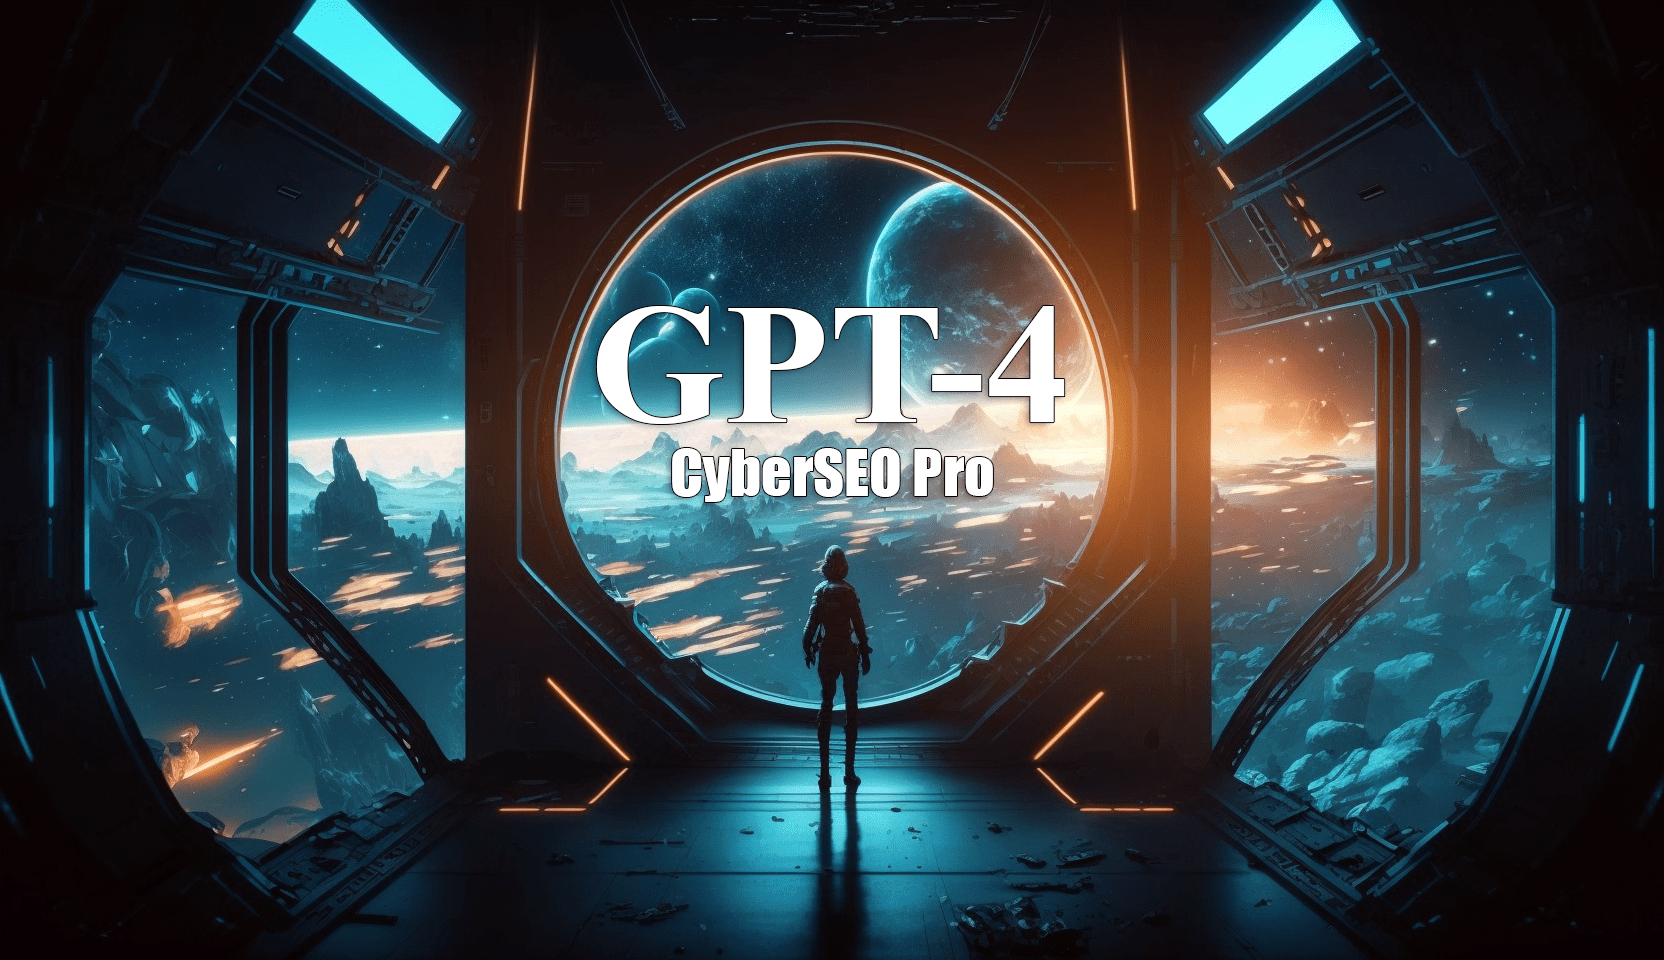 CyberSEO Pro - GPT-4